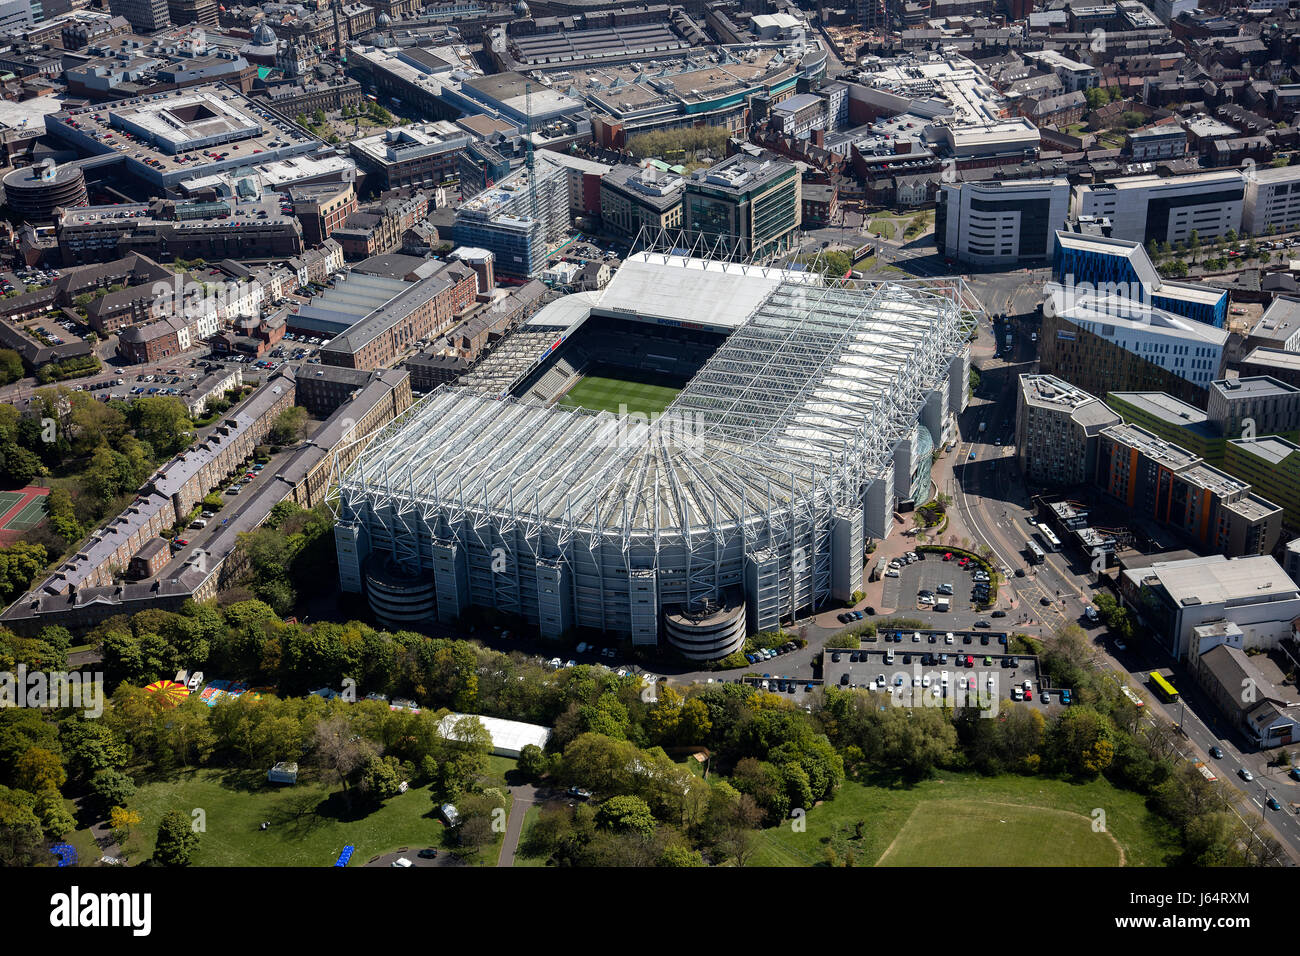 Tagsüber ein Luftbild von St James' Park Fußballstadion in Newcastle Upon Tyne, Tyne and Wear, England, Vereinigtes Königreich, Nordosteuropa Stockfoto